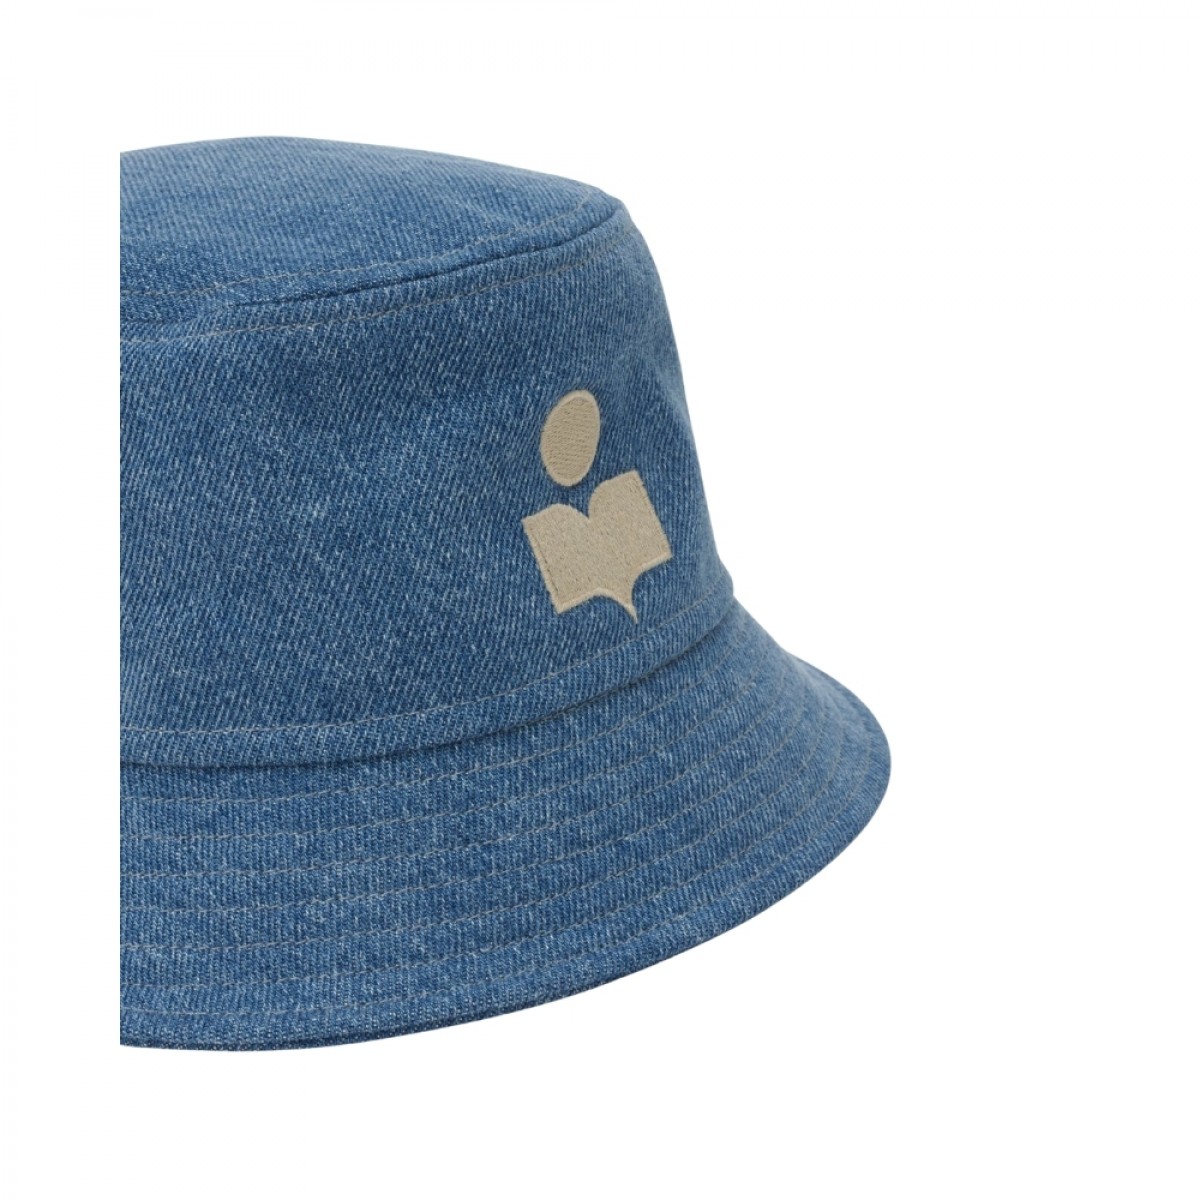 haley logo hat - light blue - fra siden 